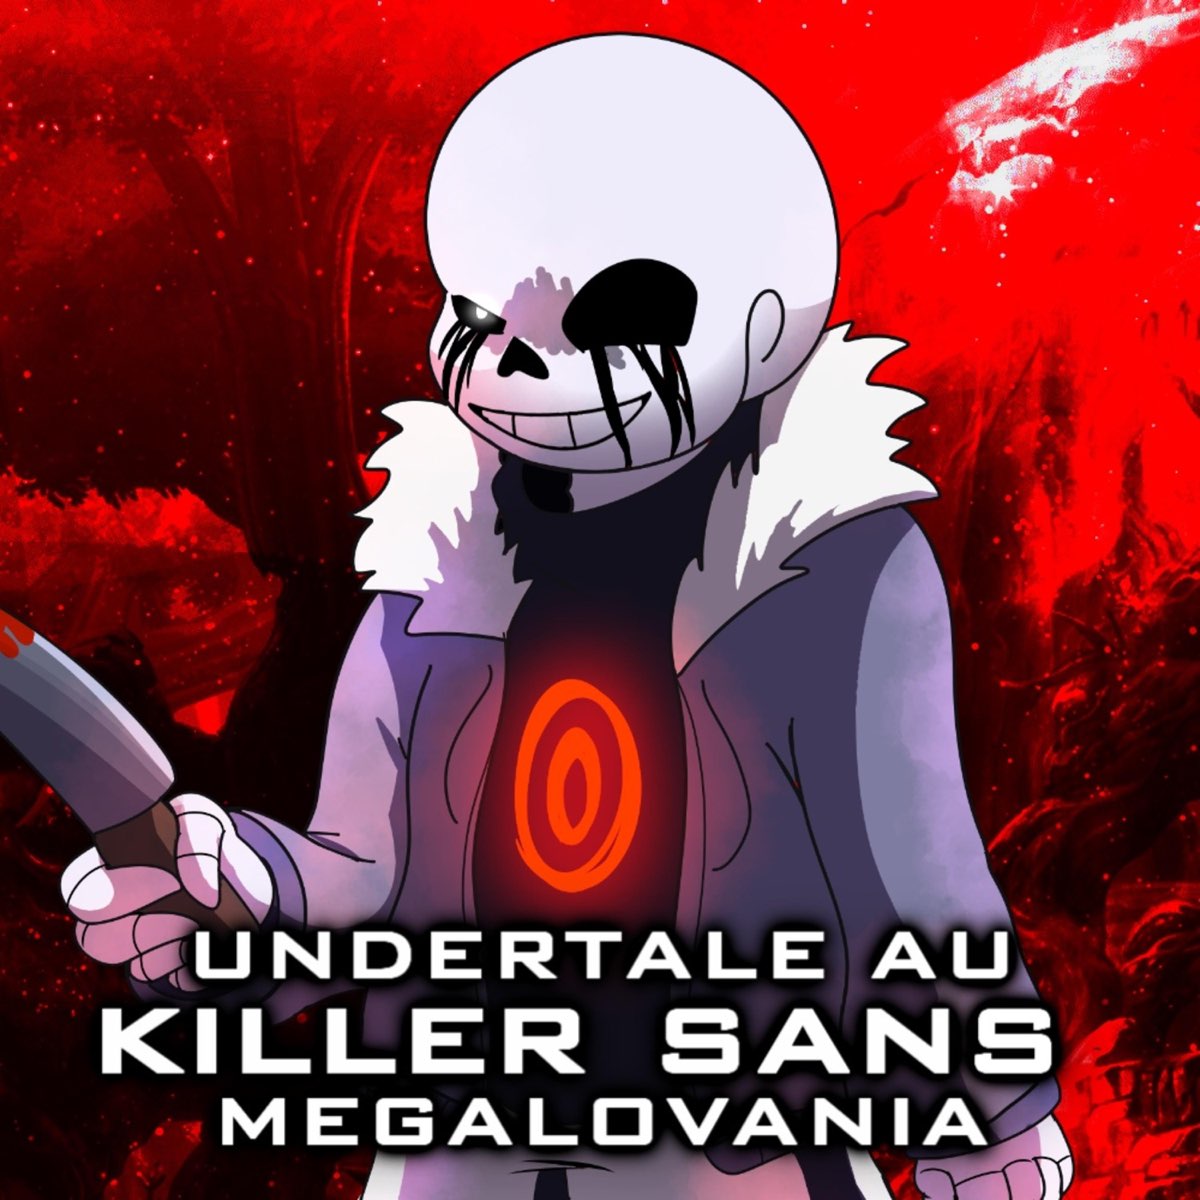 Undertale AU) Killer Sans Megalovania (Killervania) by Exetior - Tuna